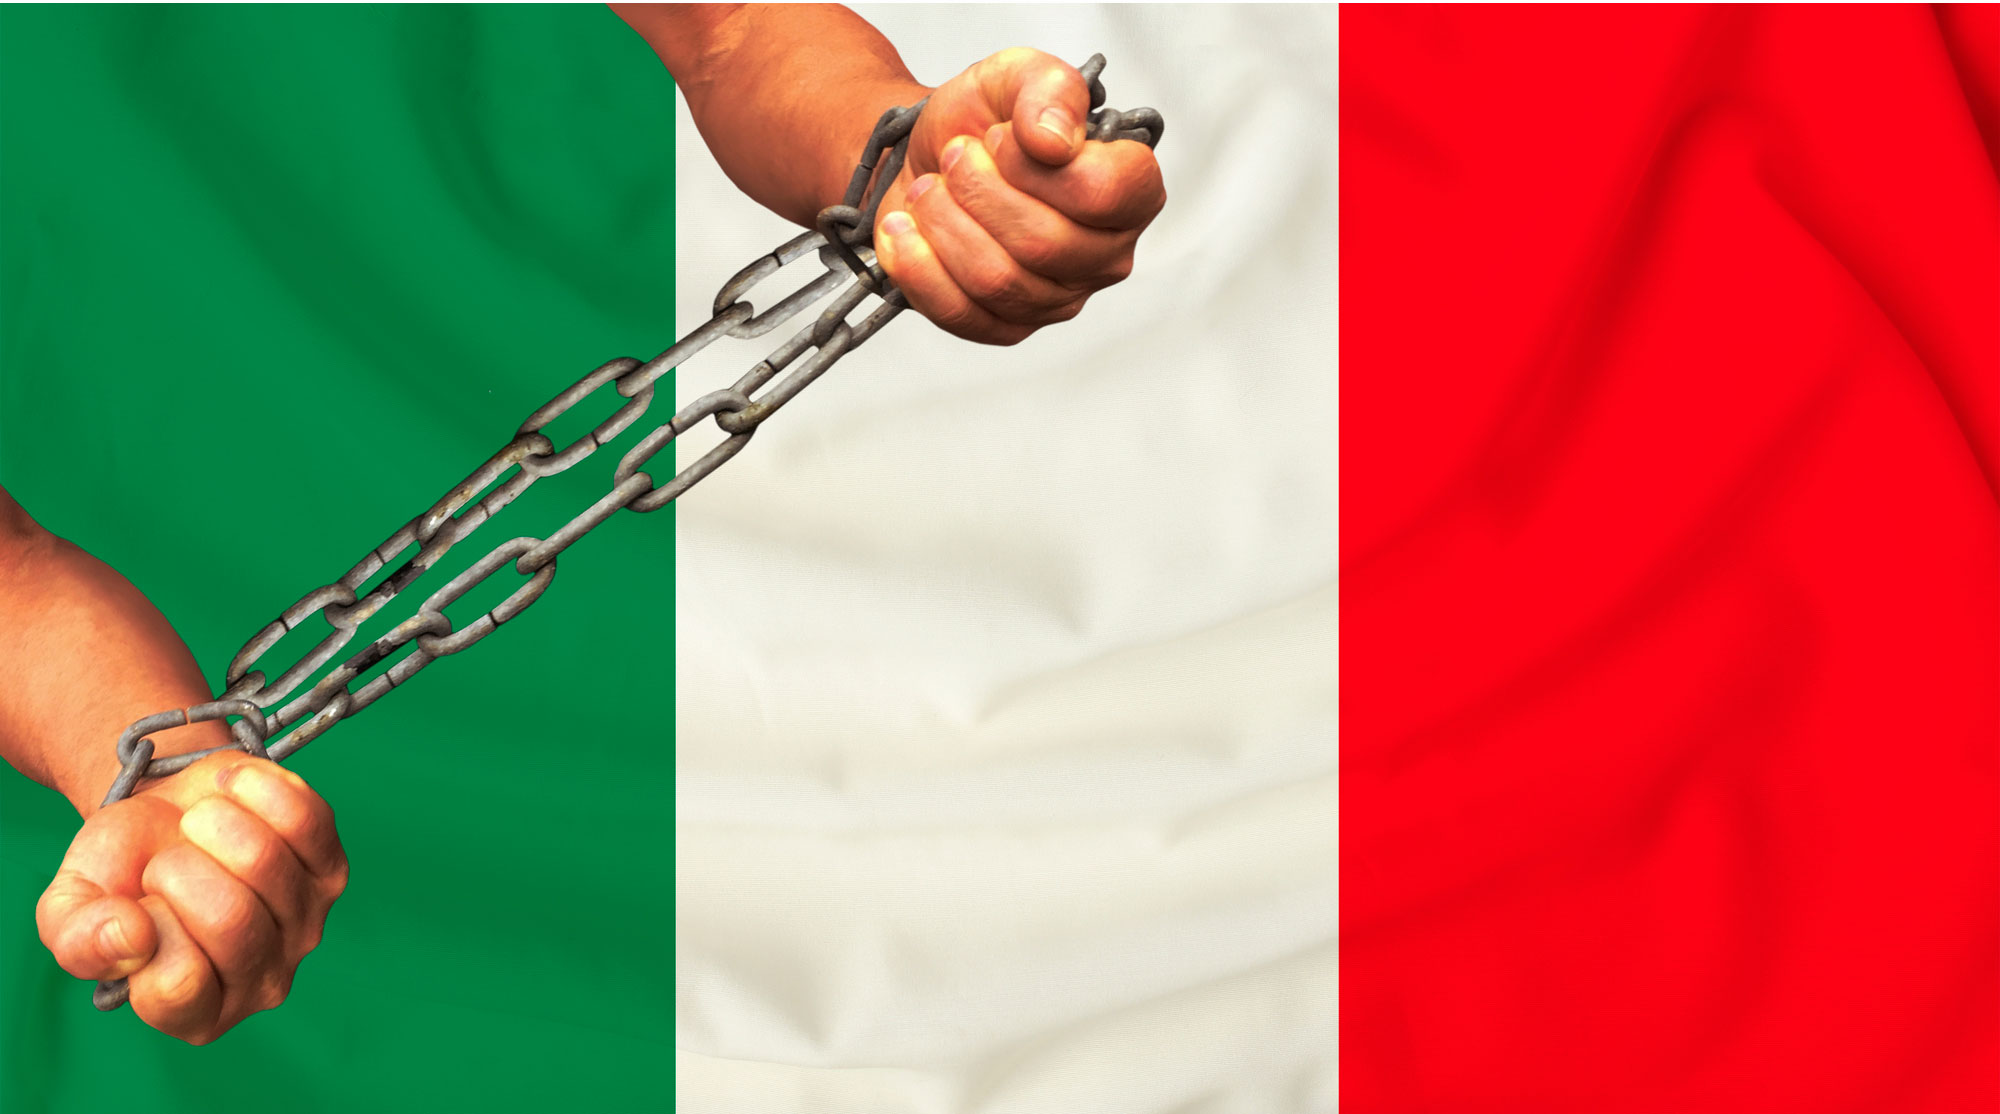 4 неочевидные вещи, за которые могут серьезно наказать в Италии